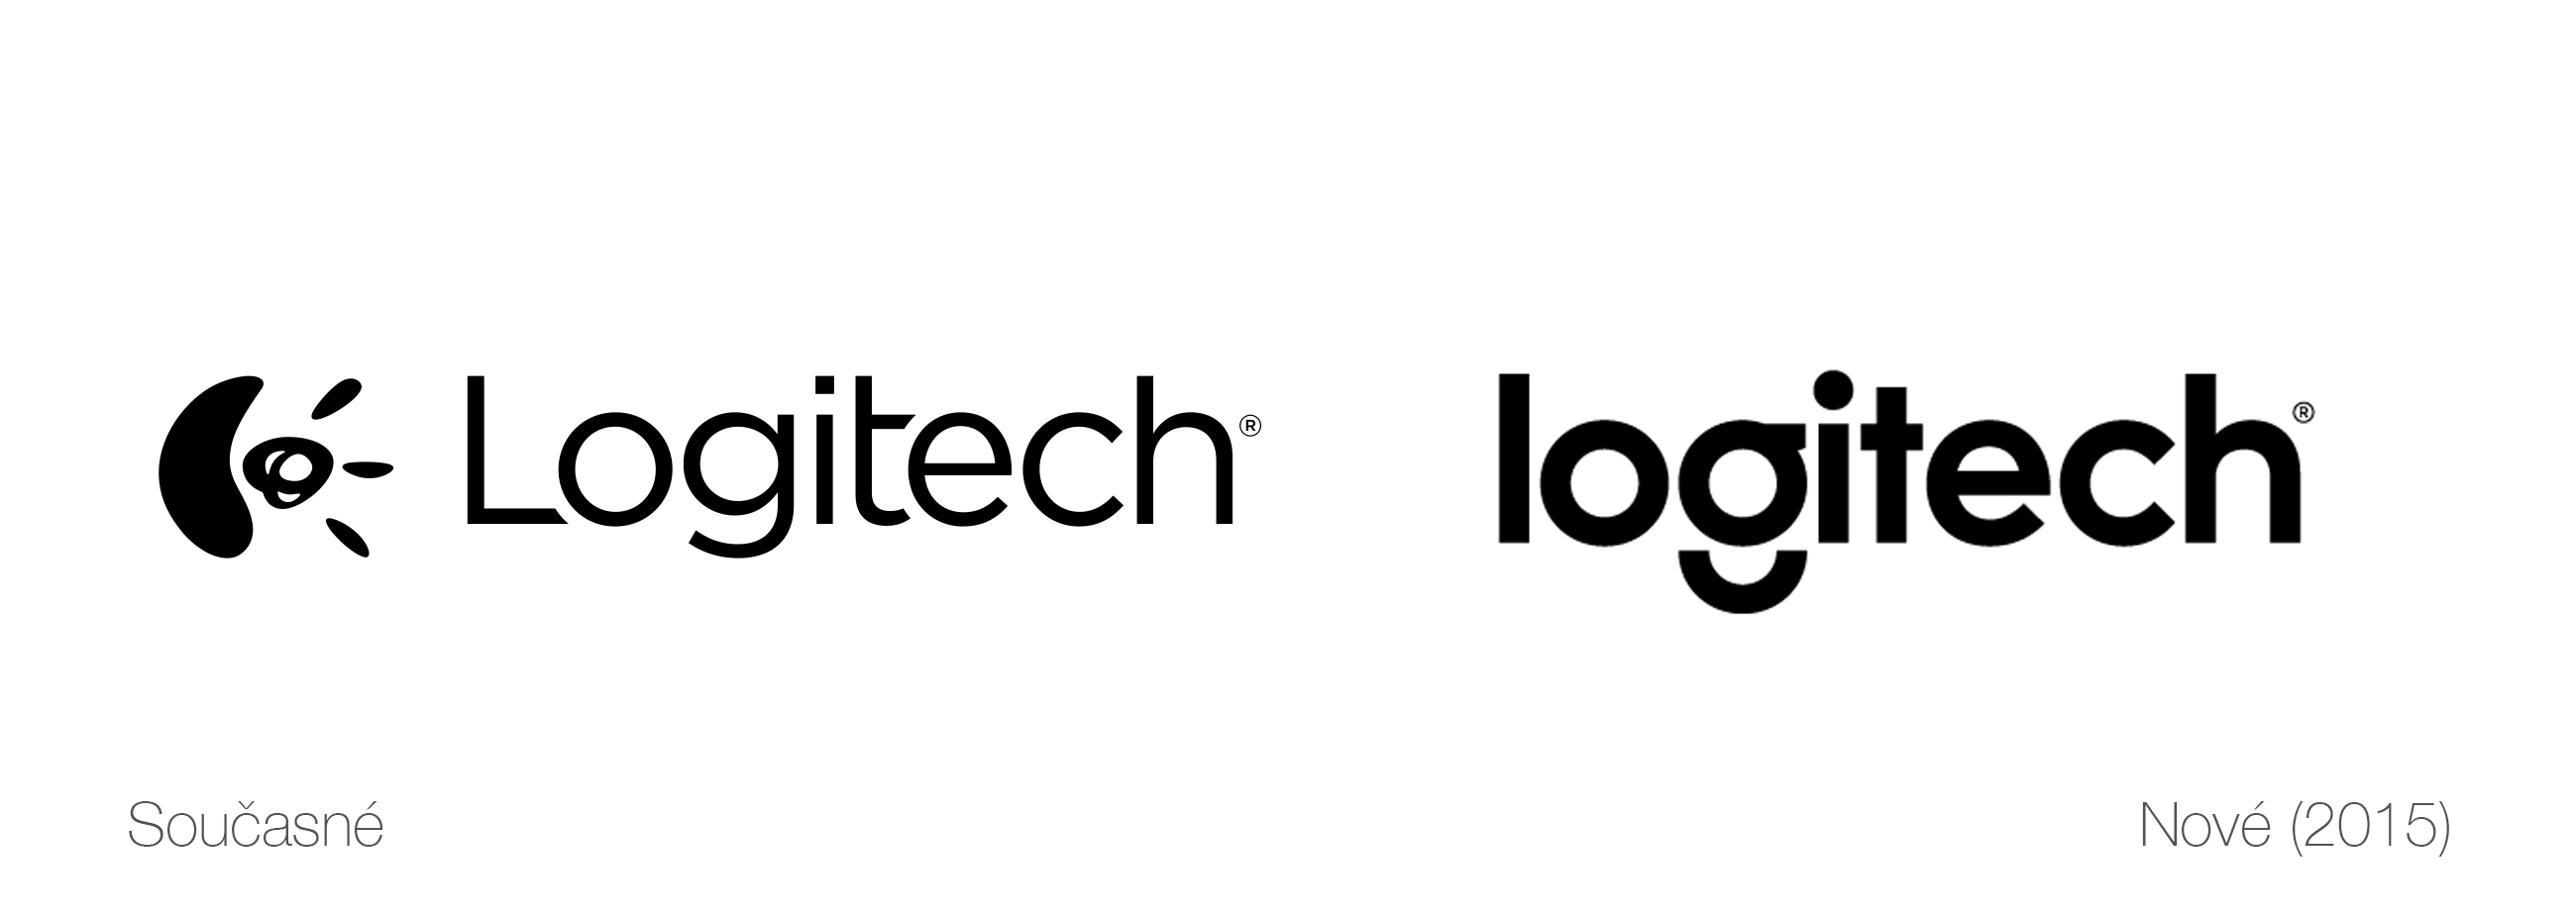 logitech-new-vs-old-logo